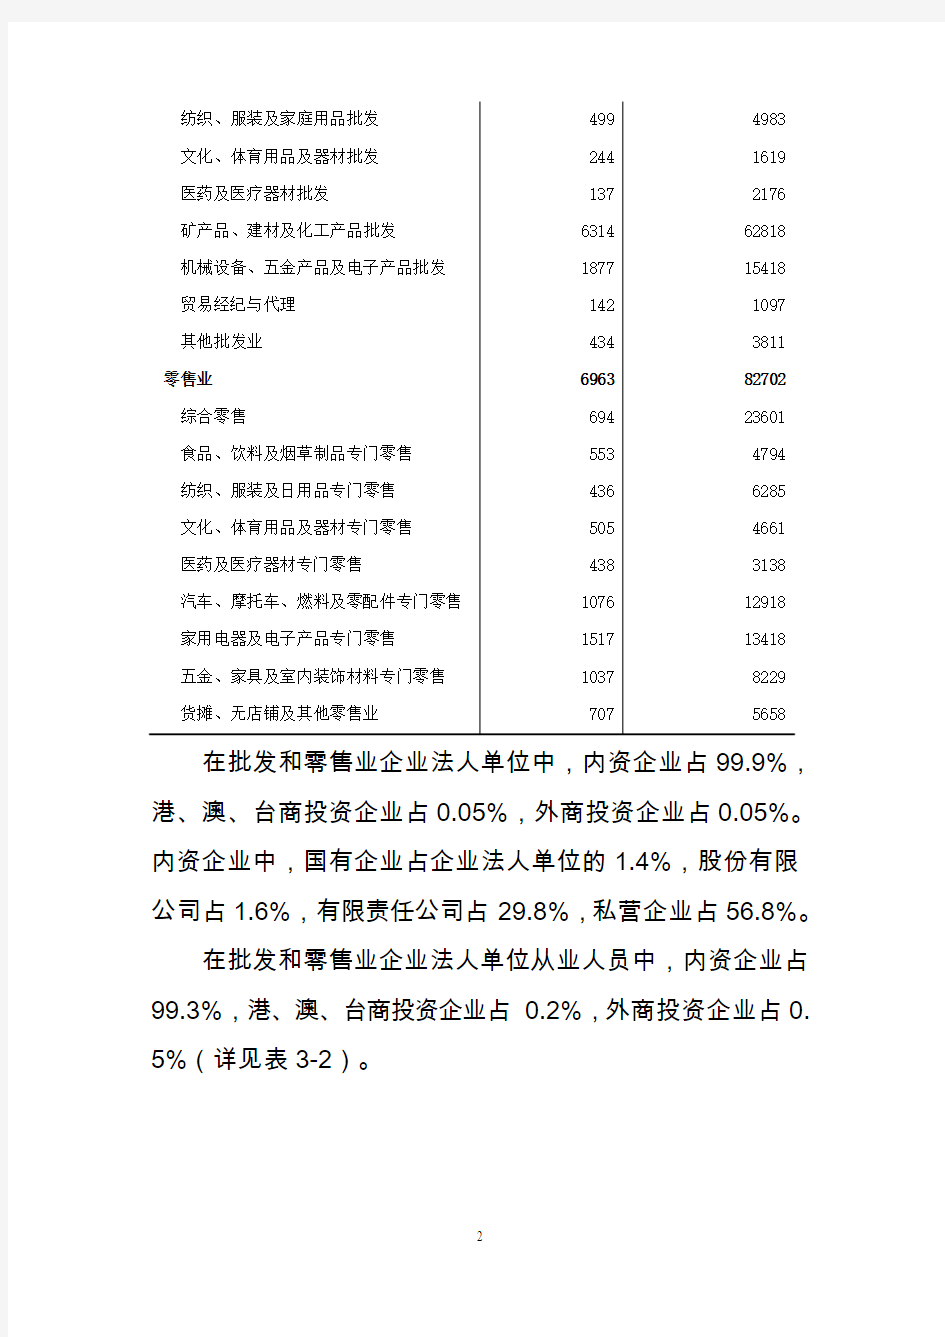 邯郸市第三次经济普查主要数据公报